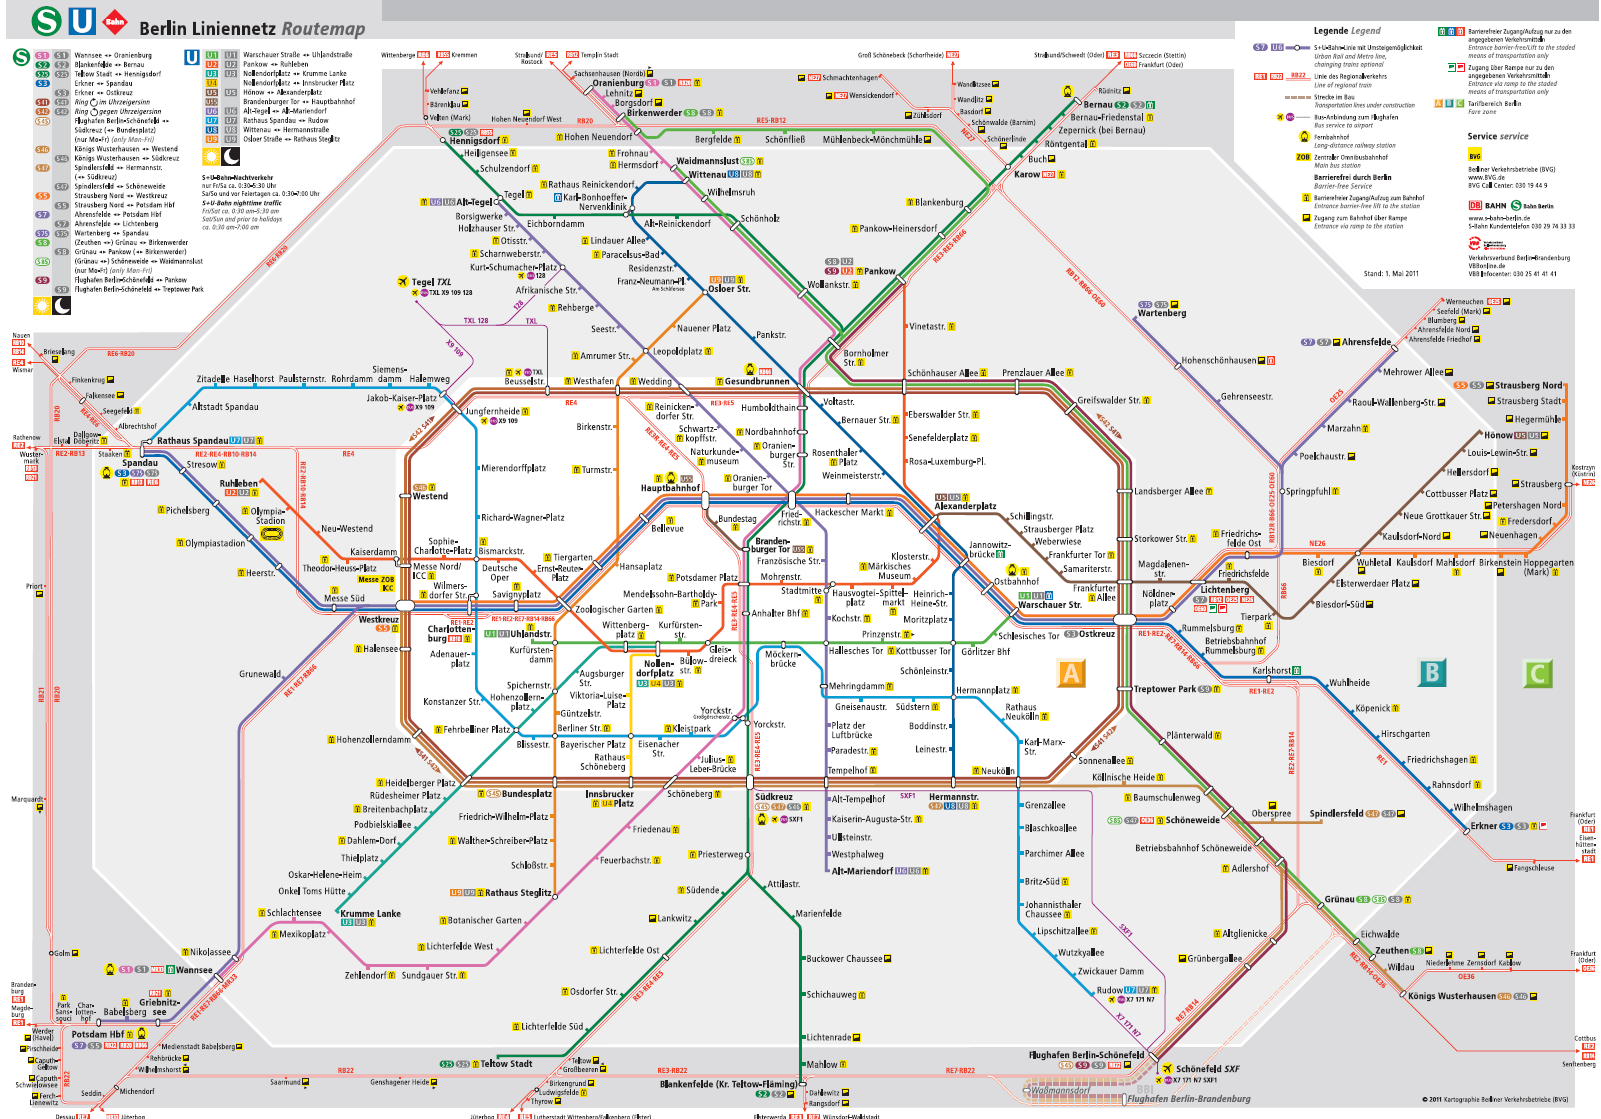 Berlin közösségi közlekedési hálózata jelenleg<br>(forrás: Verkehrsverbund Berlin-Brandenburg)